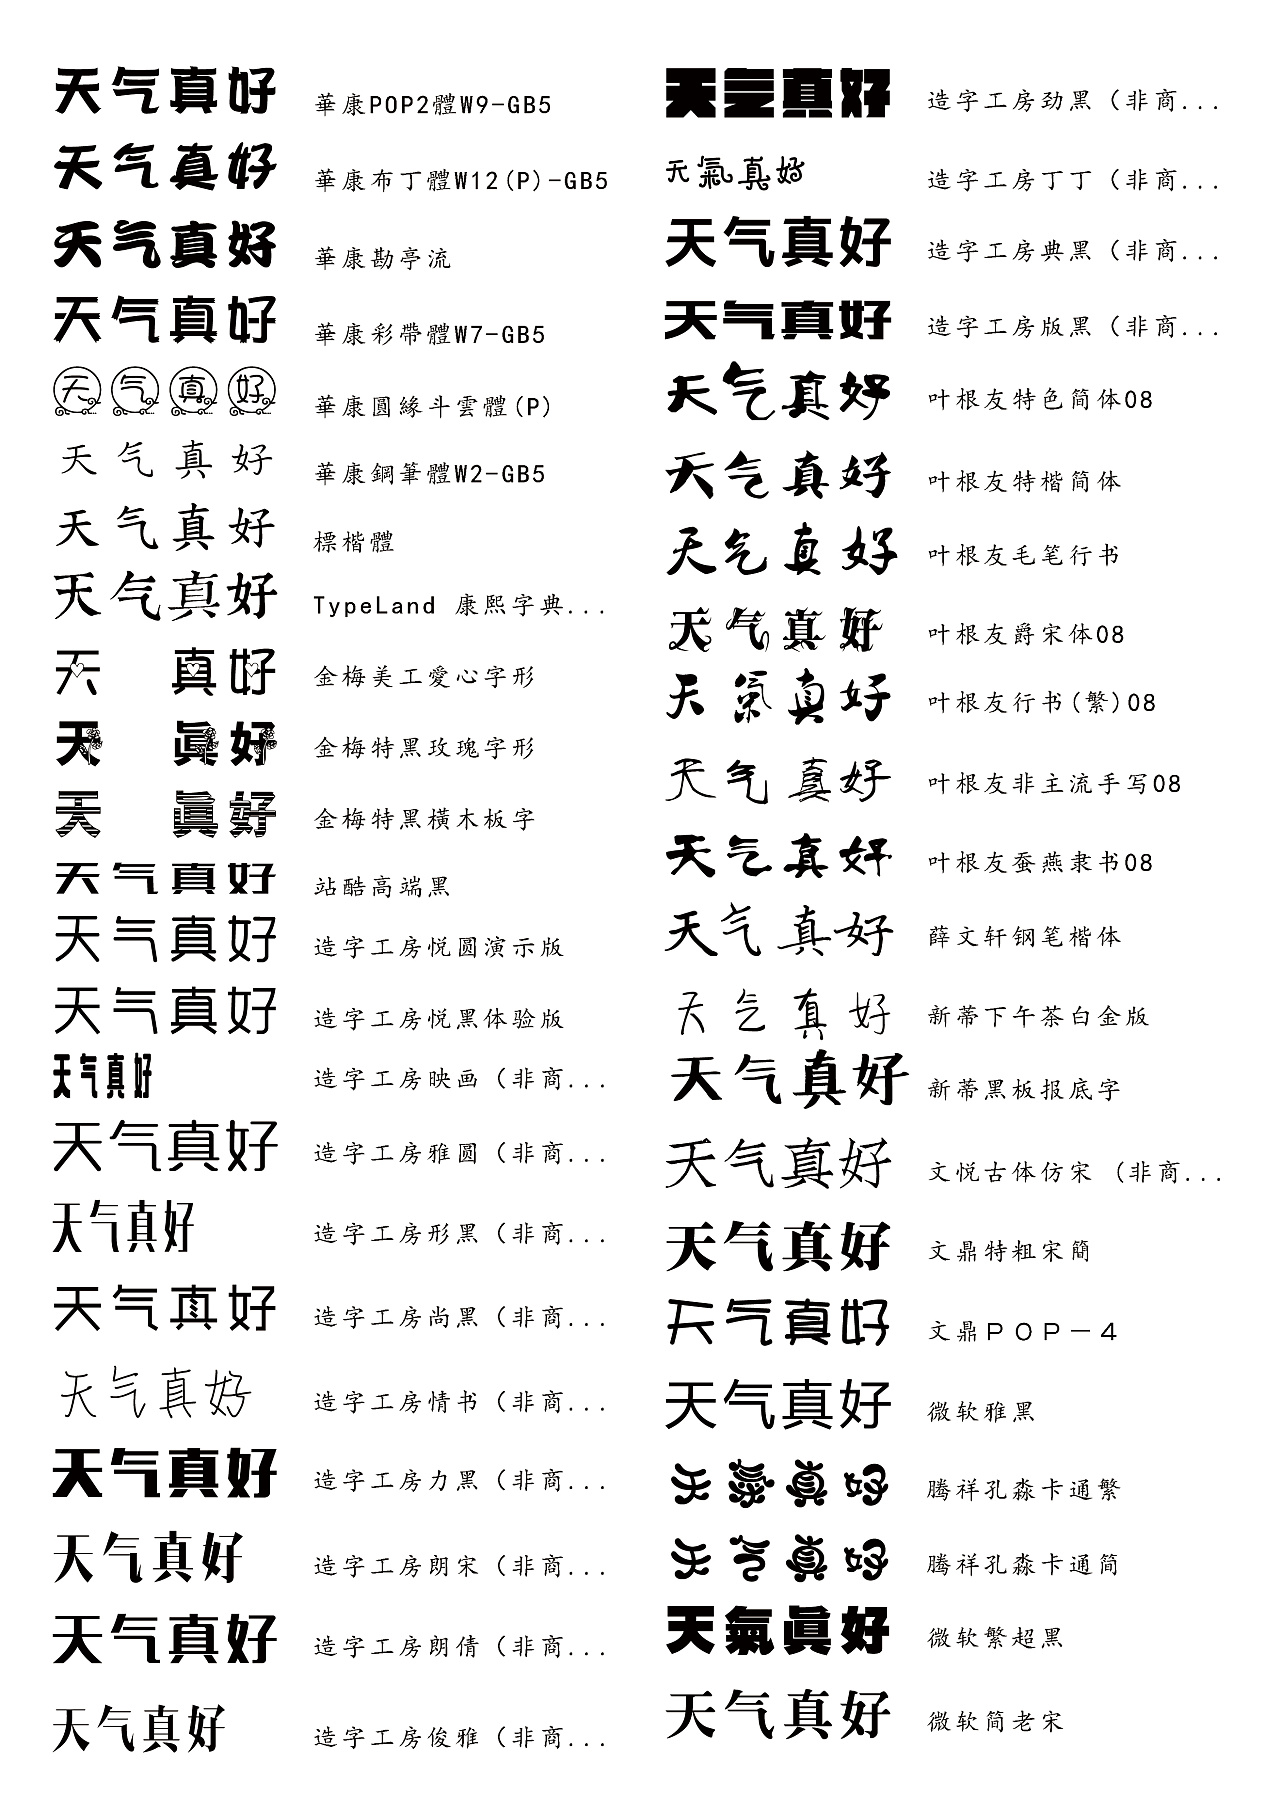 汉字的各种字体大全图片